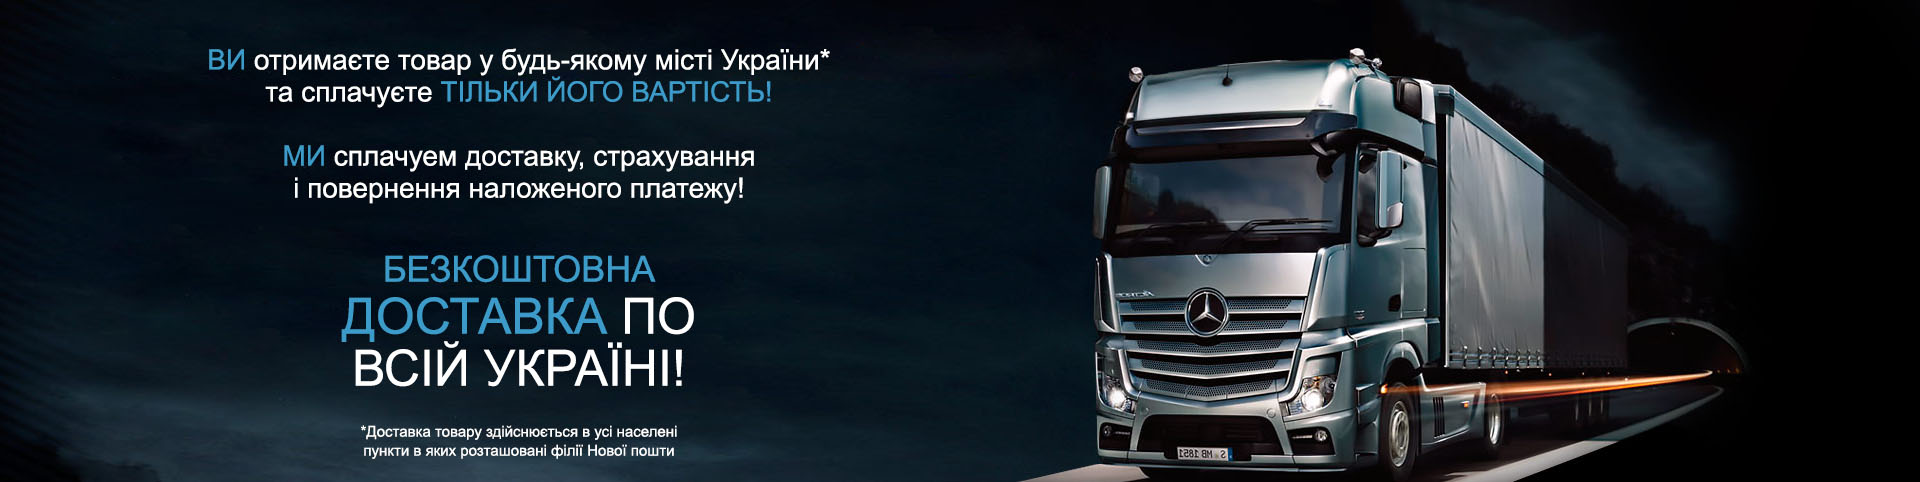 Замовляйте товари з безкоштовною доставкою по Україні!